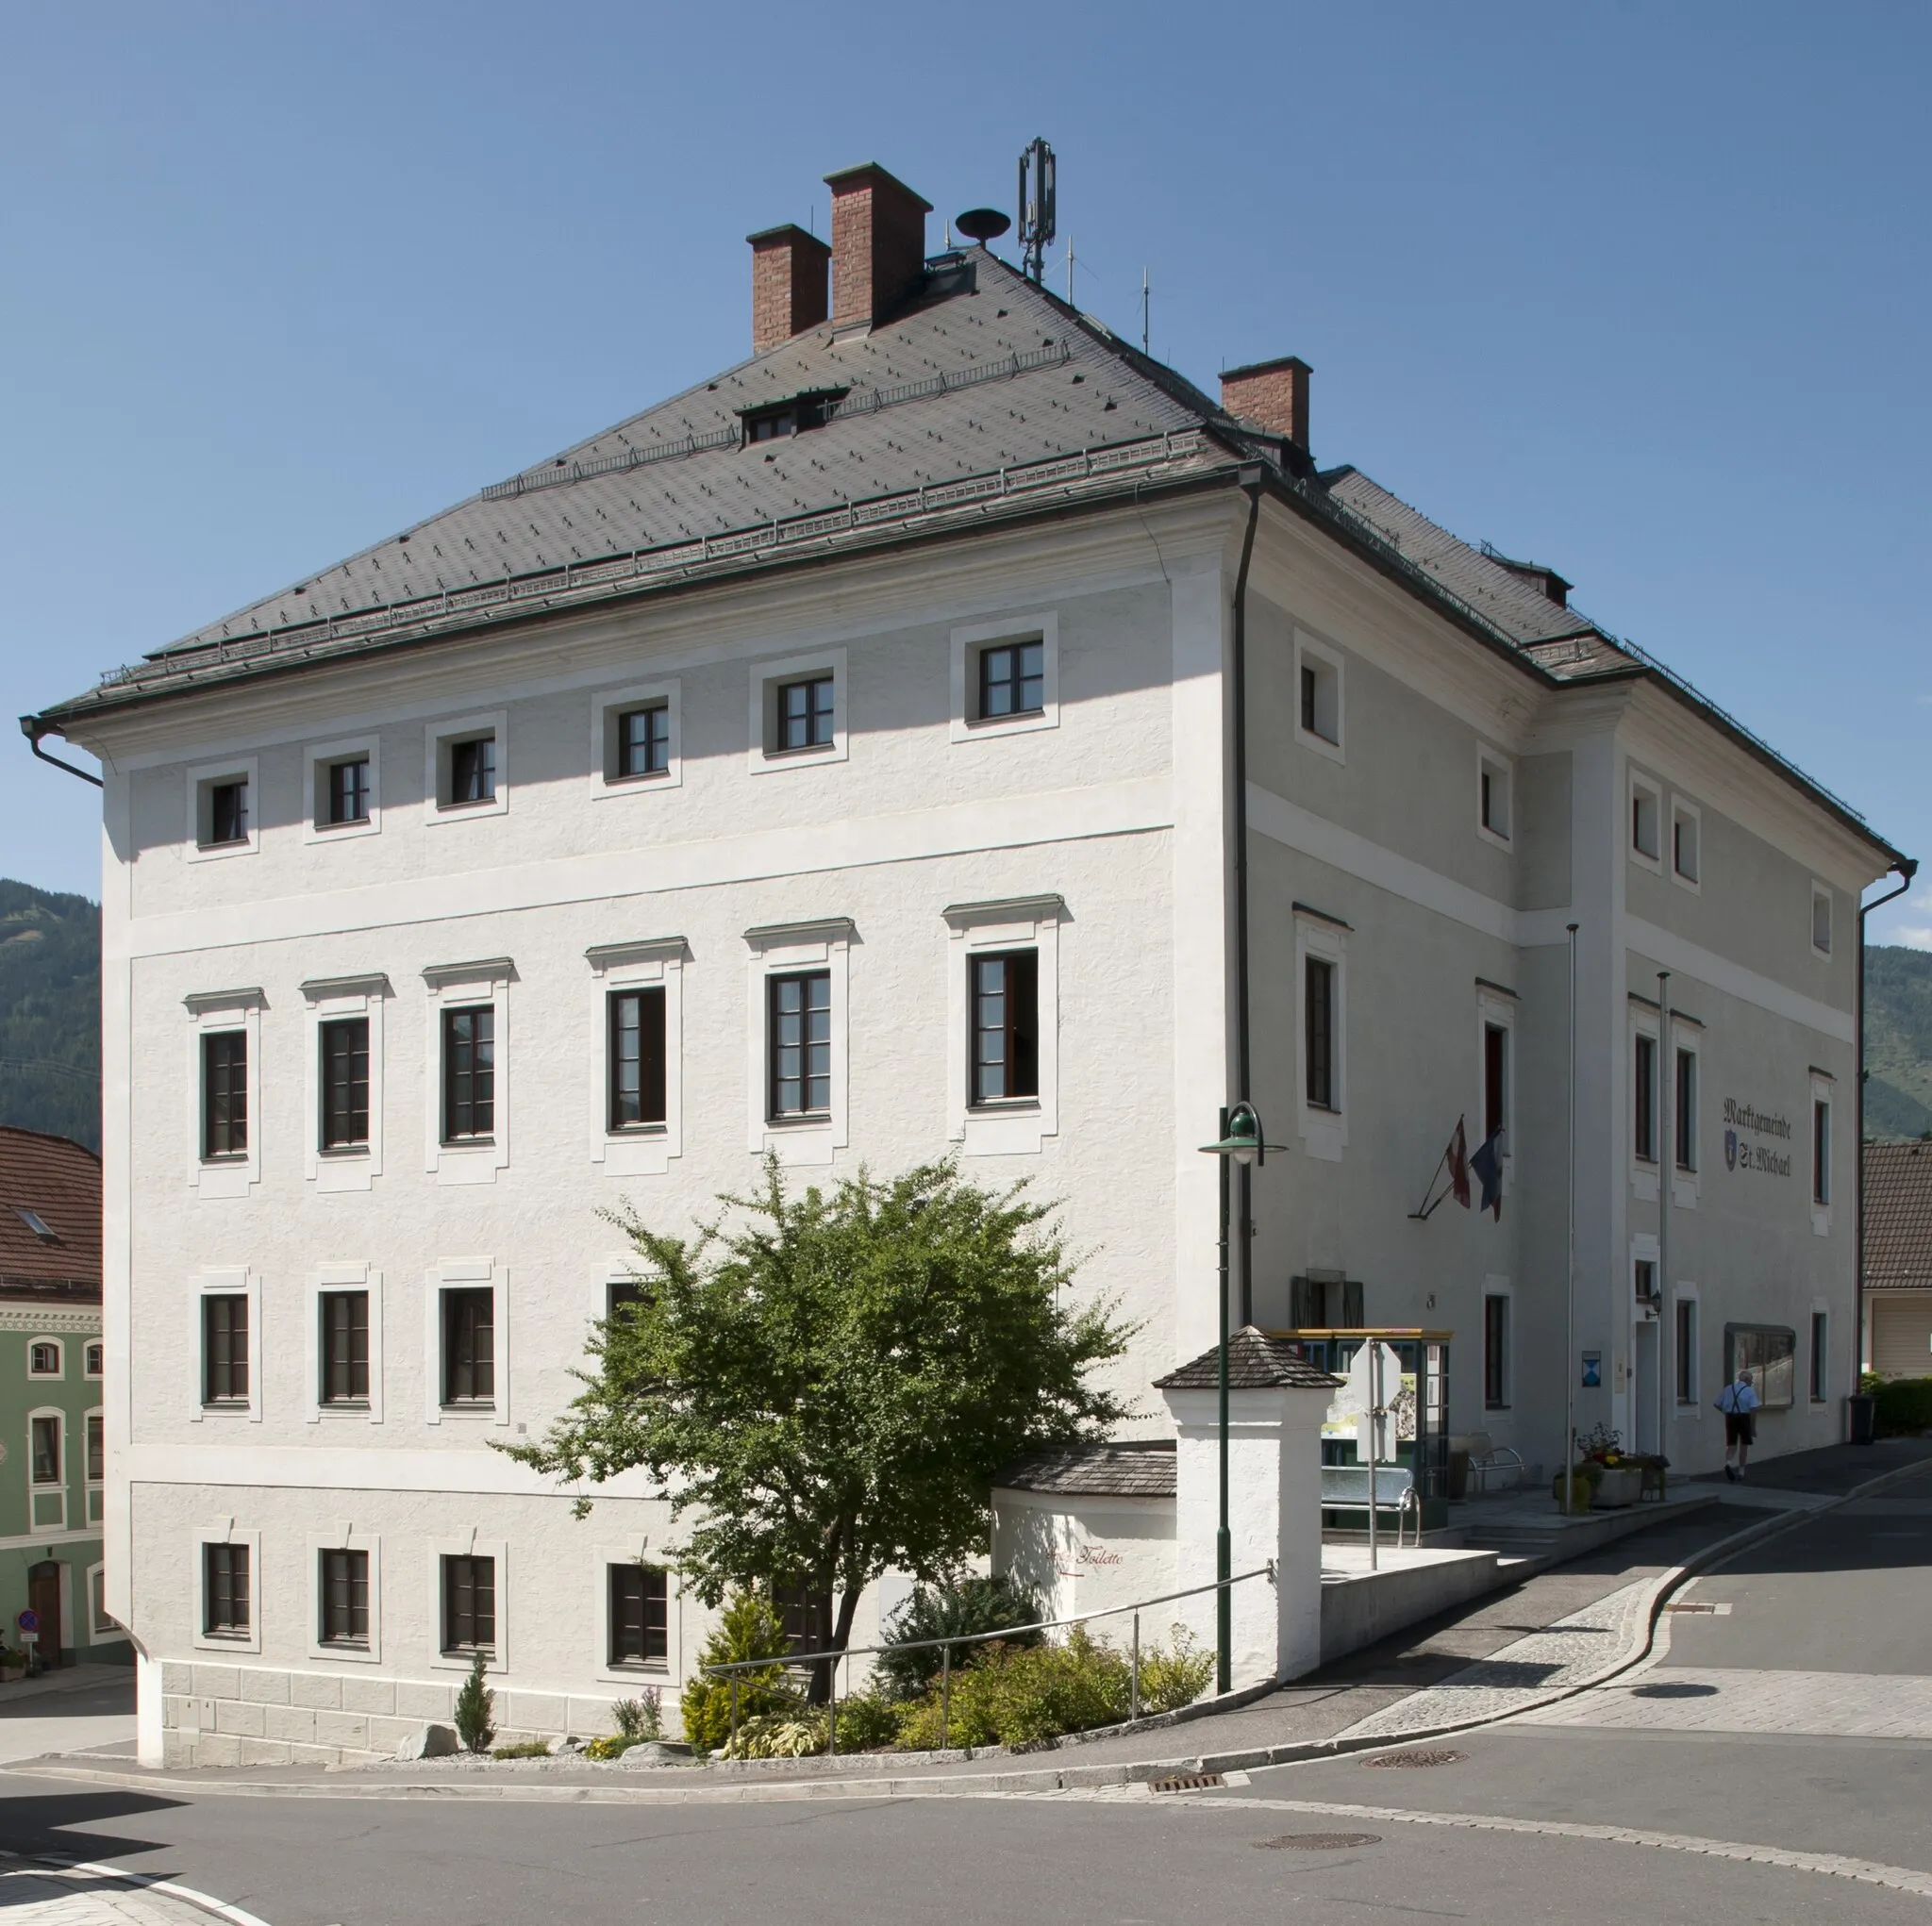 Immagine di Salzburg